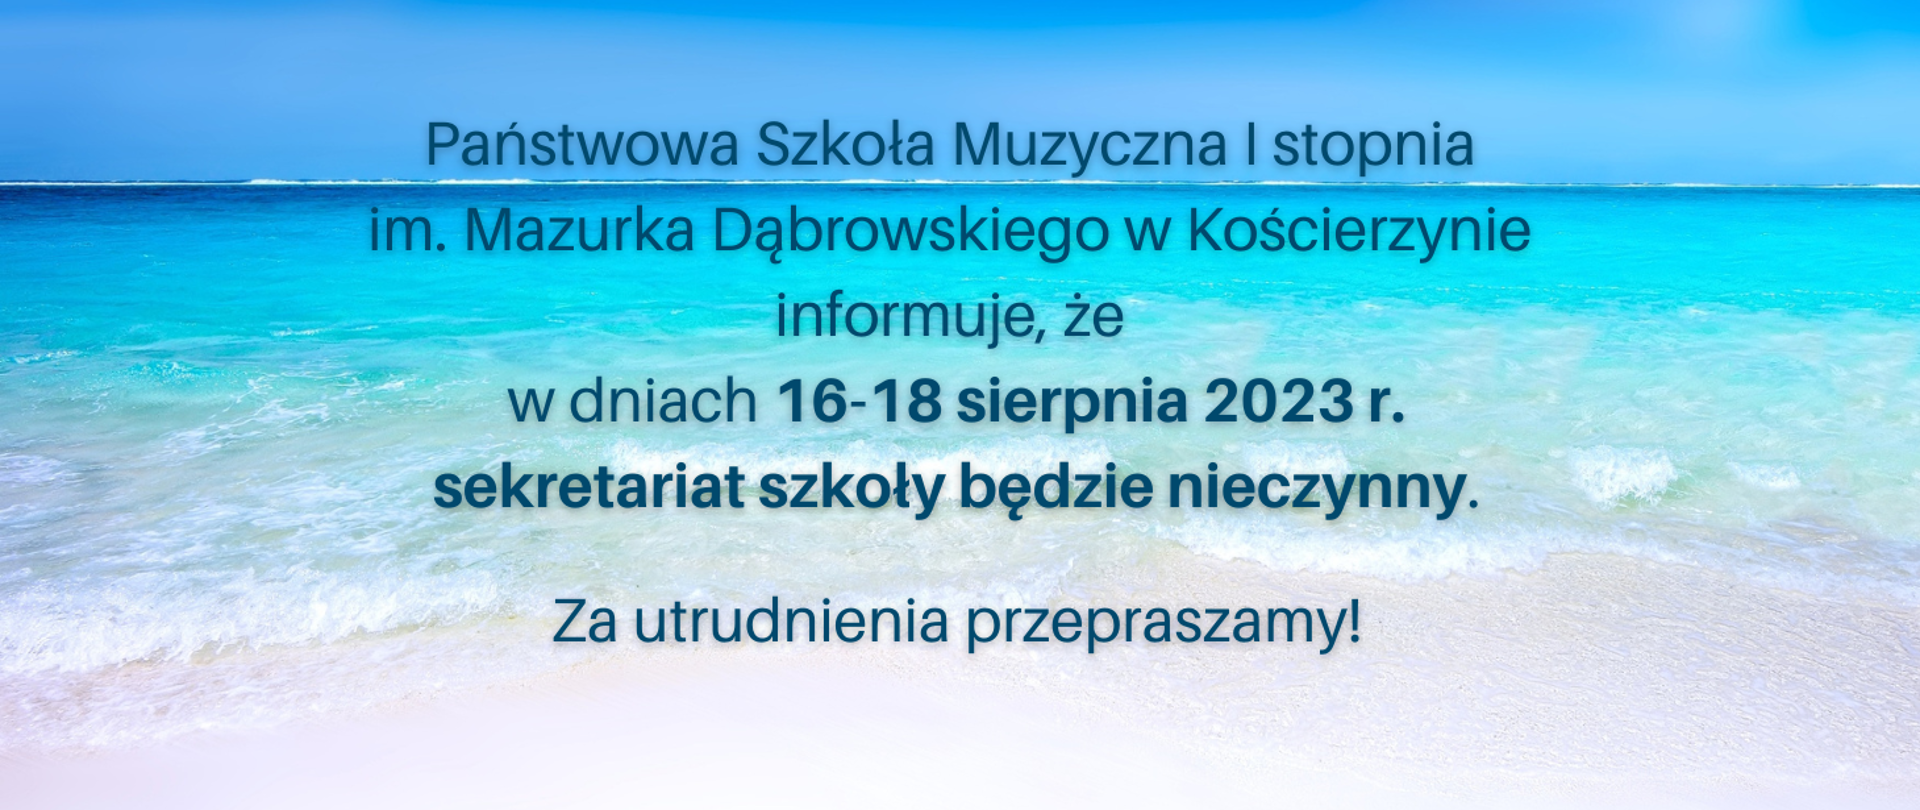 Tło obrazka to widok morskich fal. Na obrazku napis: "Państwowa Szkoła Muzyczna I stopnia im. Mazurka Dąbrowskiego w Kościerzynie informuje, że w dniach 16-18 sierpnia 2023 r. sekretariat szkoły będzie nieczynny. Za utrudnienia przepraszamy!"